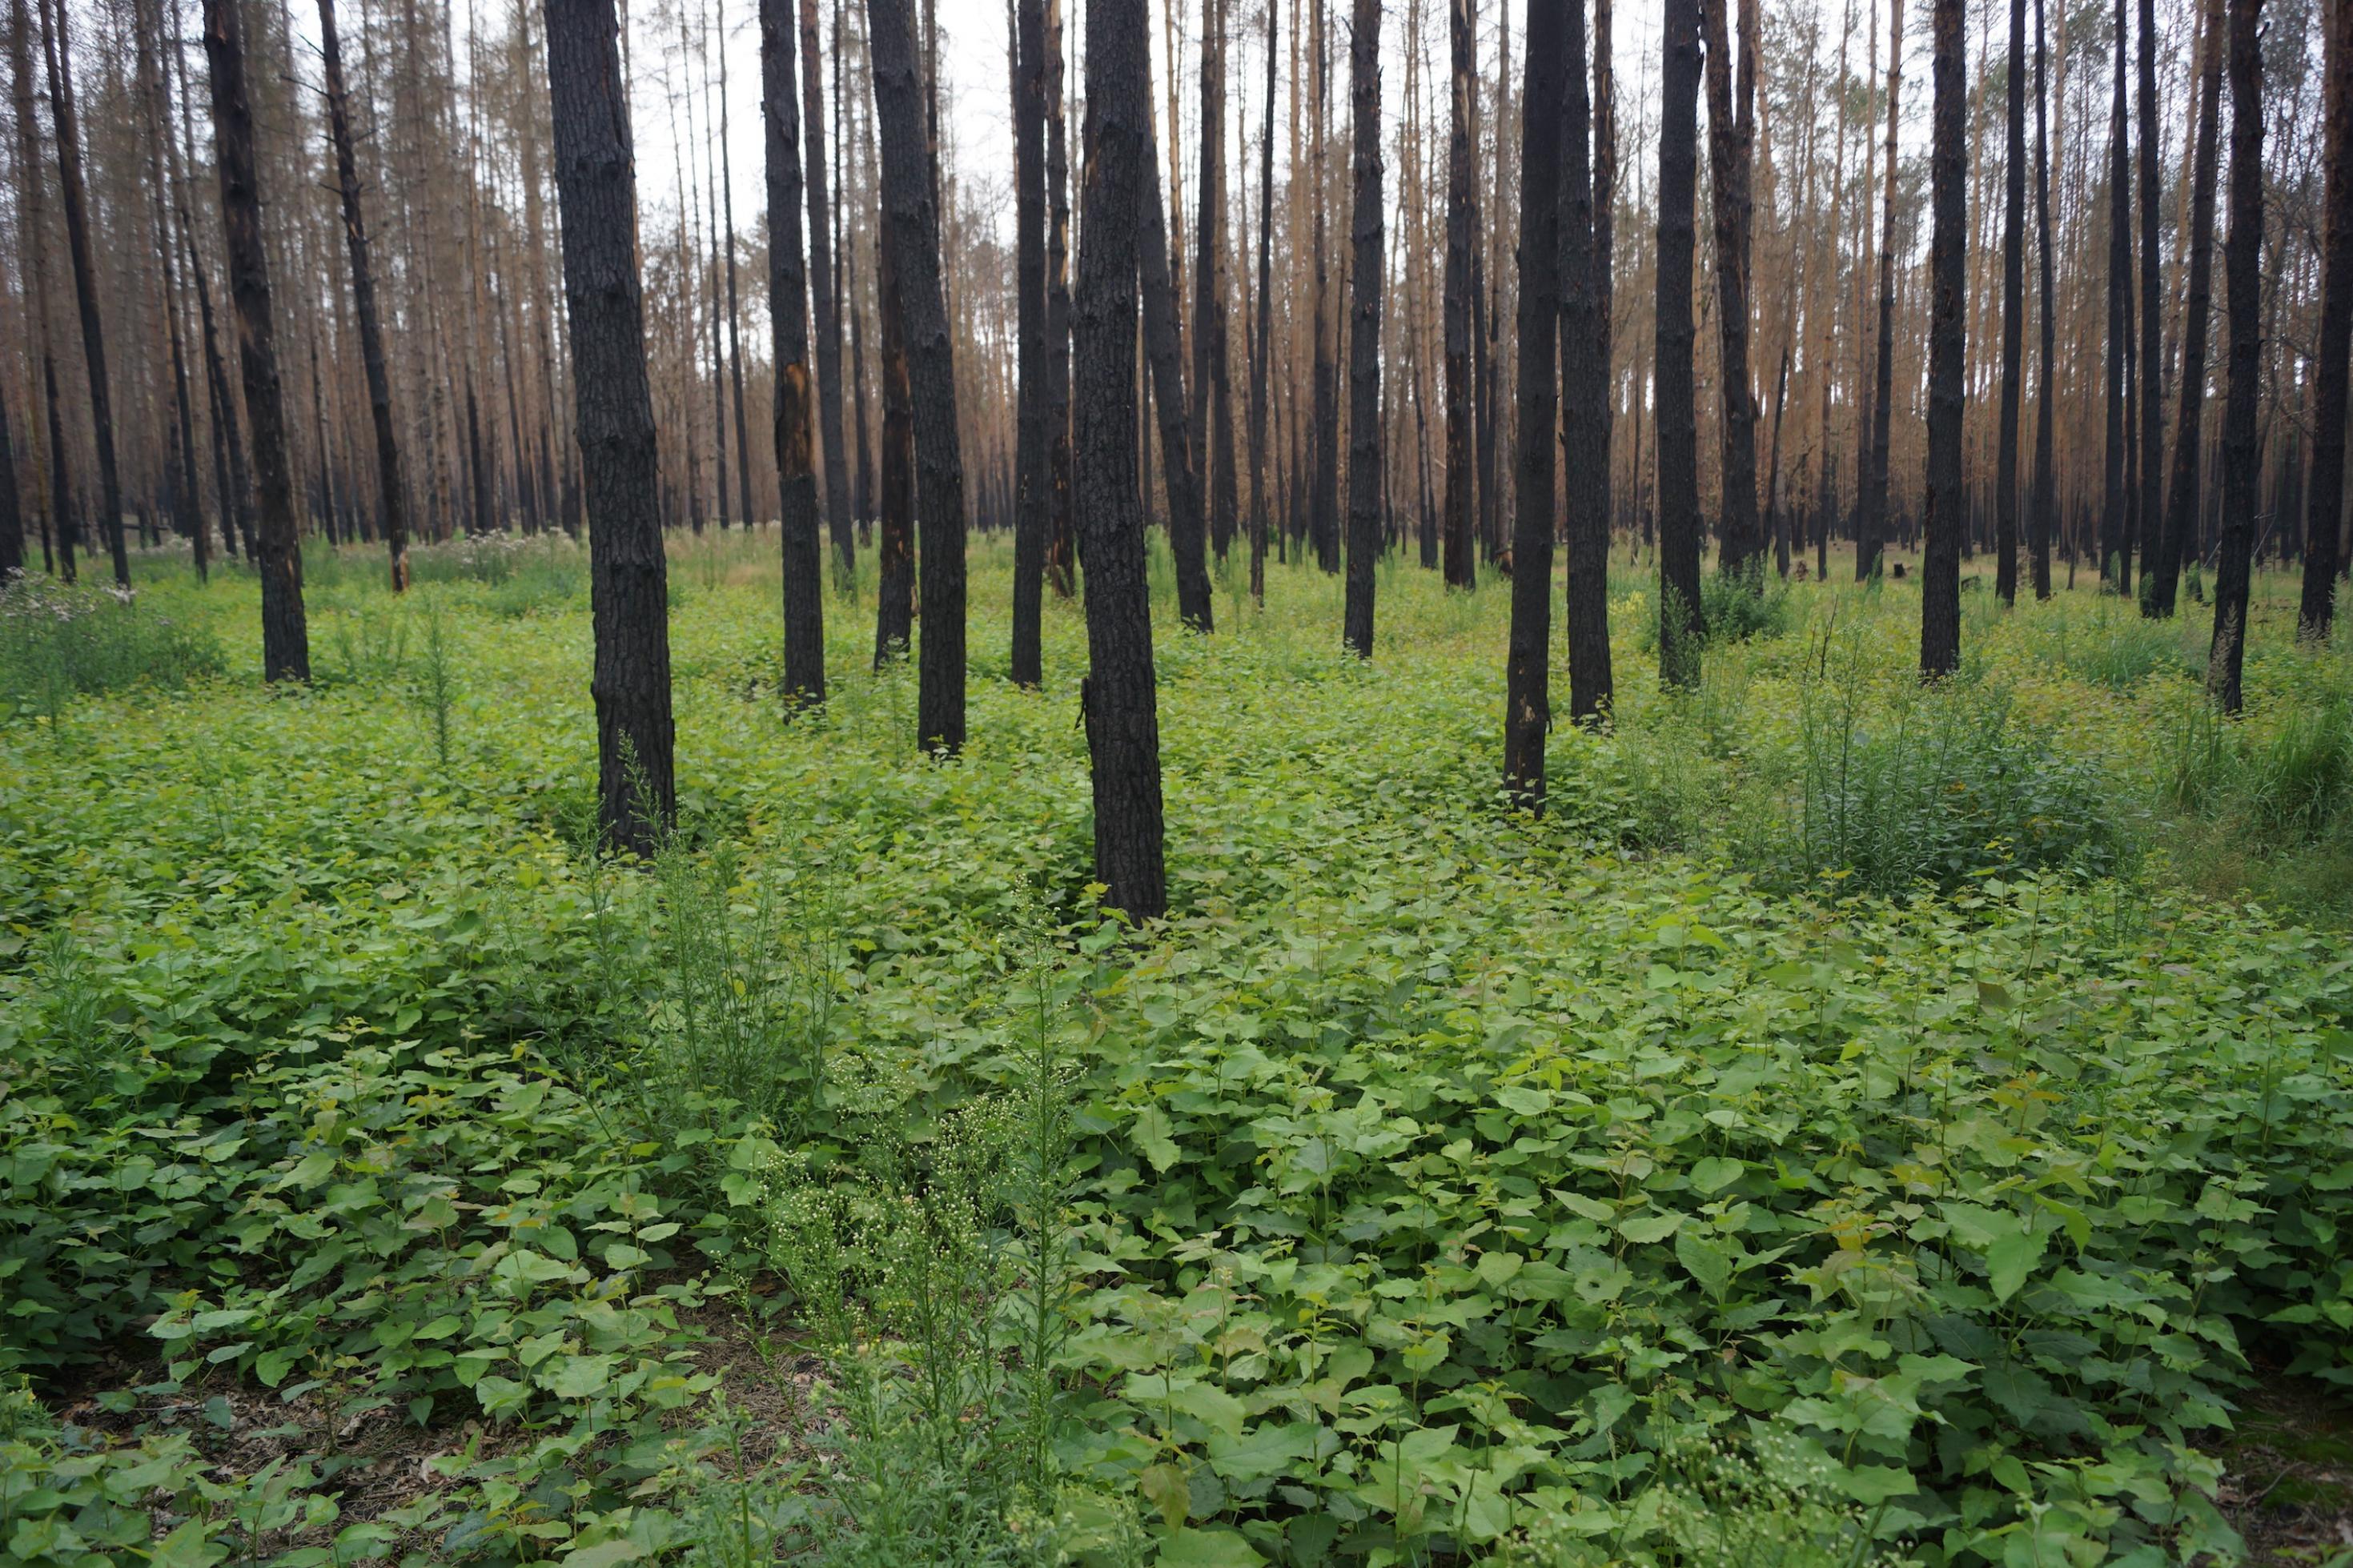 Verkohlte Baumstämme stehen nach einem Waldbrand dicht an dicht, am Boden wachsen neue grüne Pflanzen.